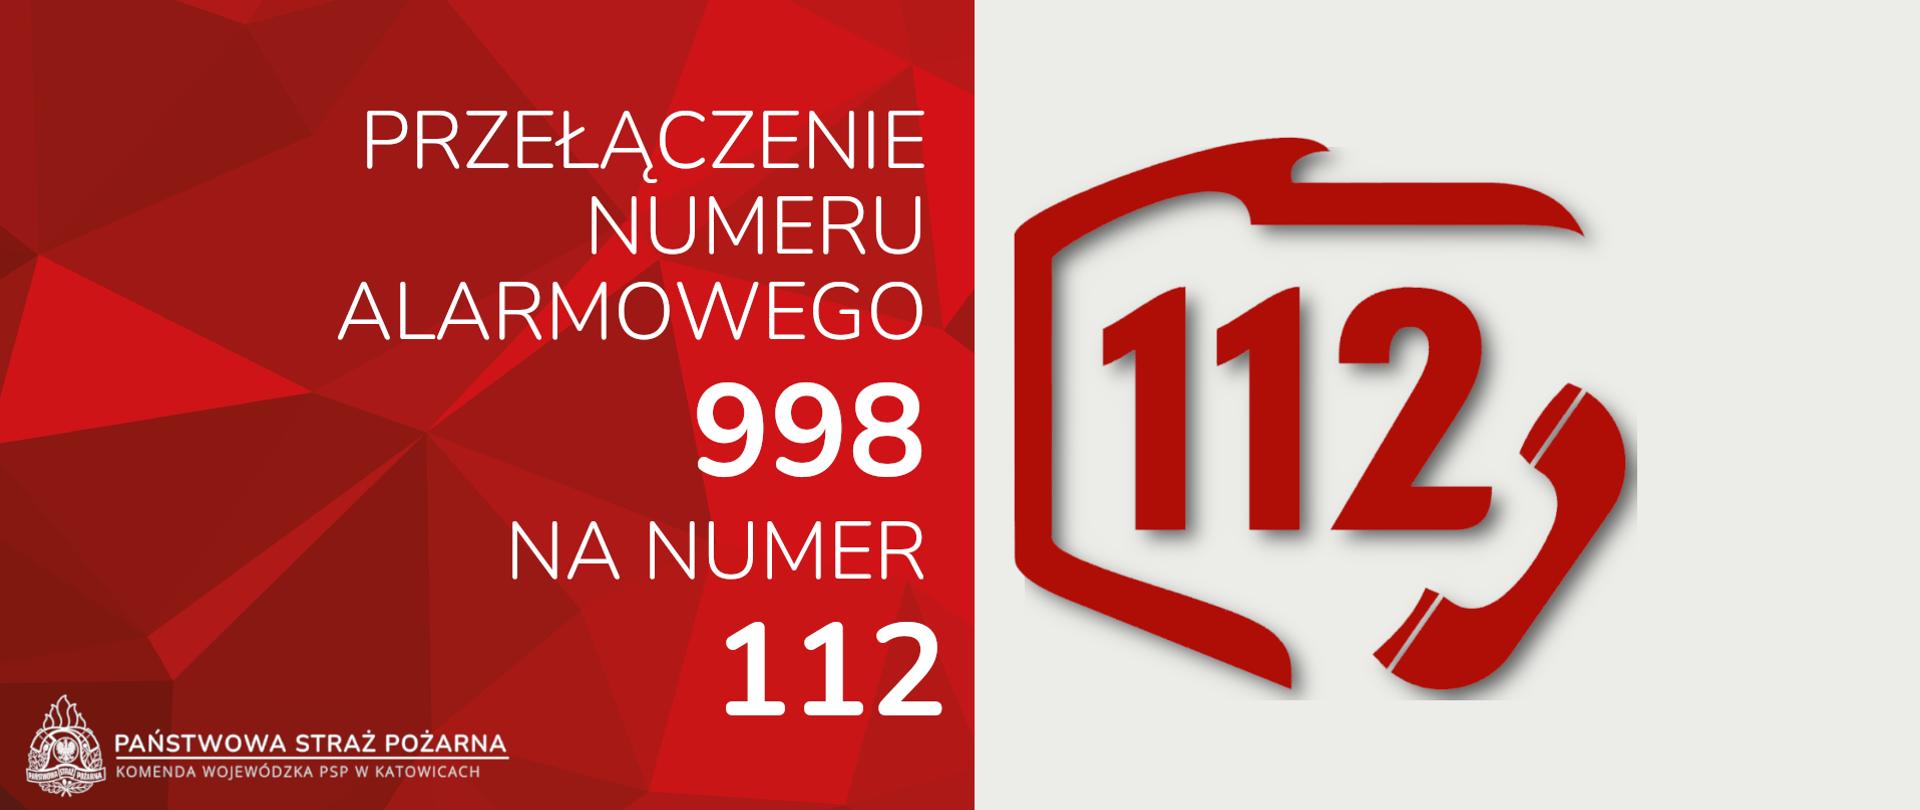 Ilustracja przedstawia po lewej stronie na czerwonym tle napis "Przełączenie numeru alarmowego 998 na numer 112", logo oraz podpis Państwowa Straż Pożarna Komenda Wojewódzka PSP w Katowicach, po prawej stronie na białym tle numer 112